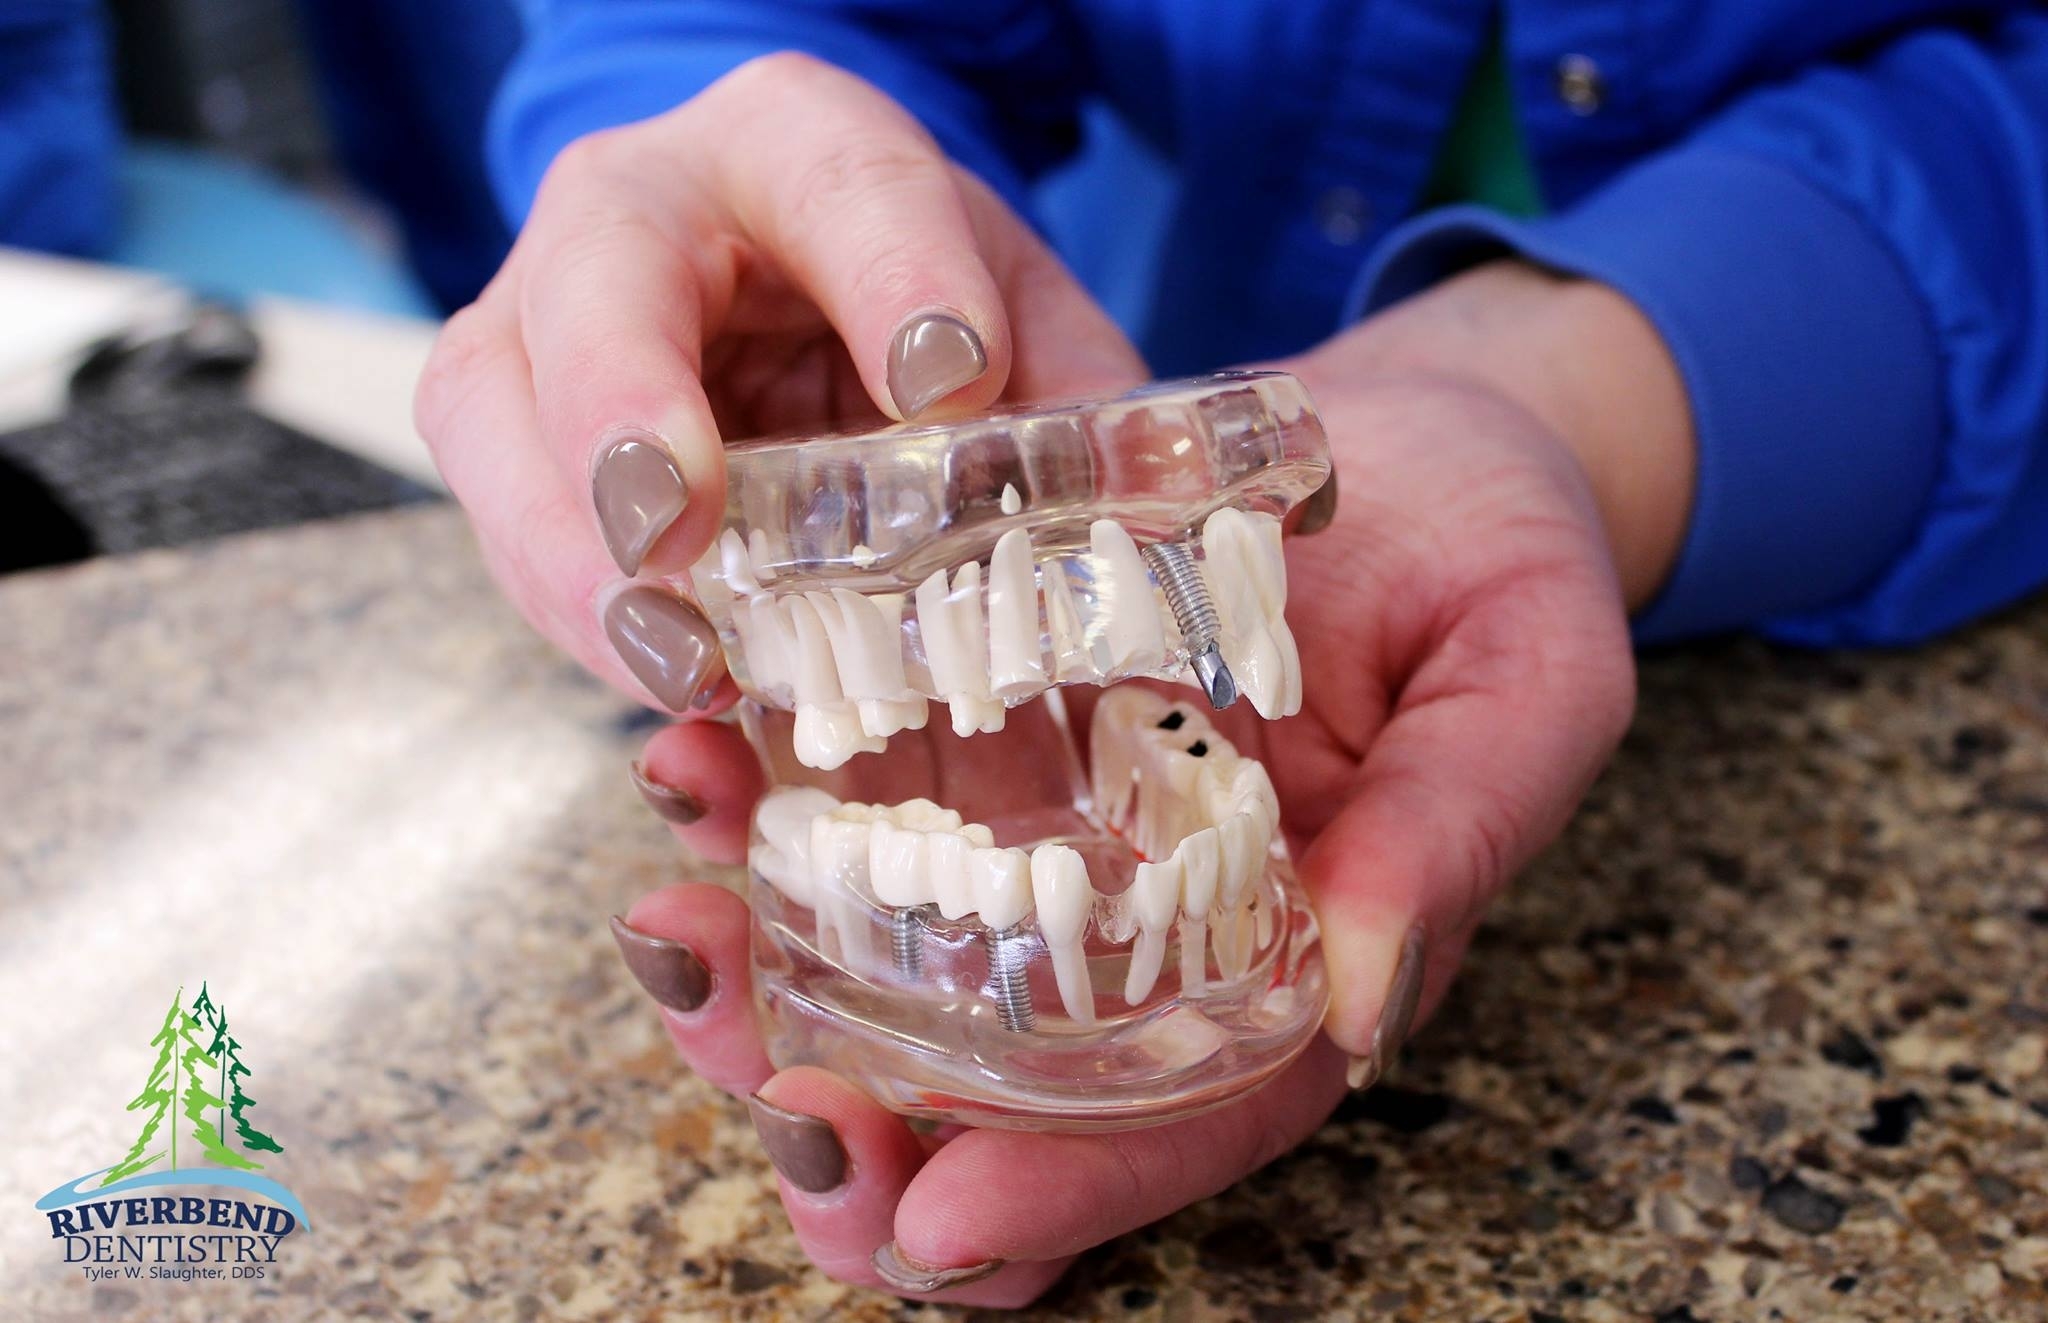 Dental Implants, Crowns, Veneers